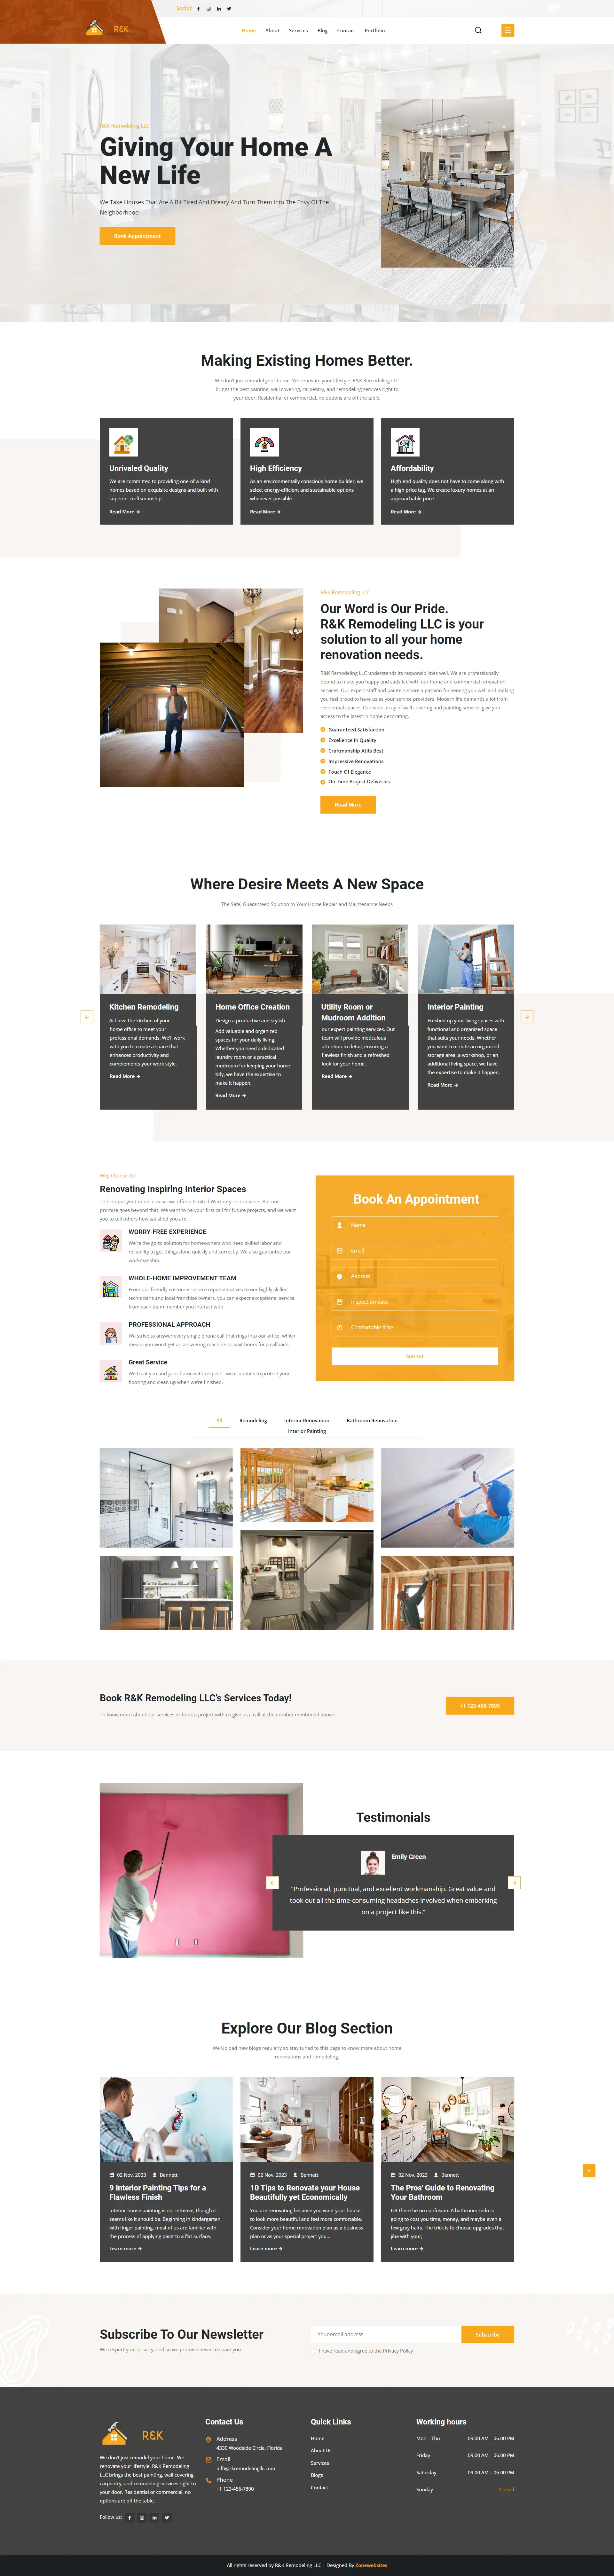 R&K Remodeling | Ultimate Home Renovation Website Design